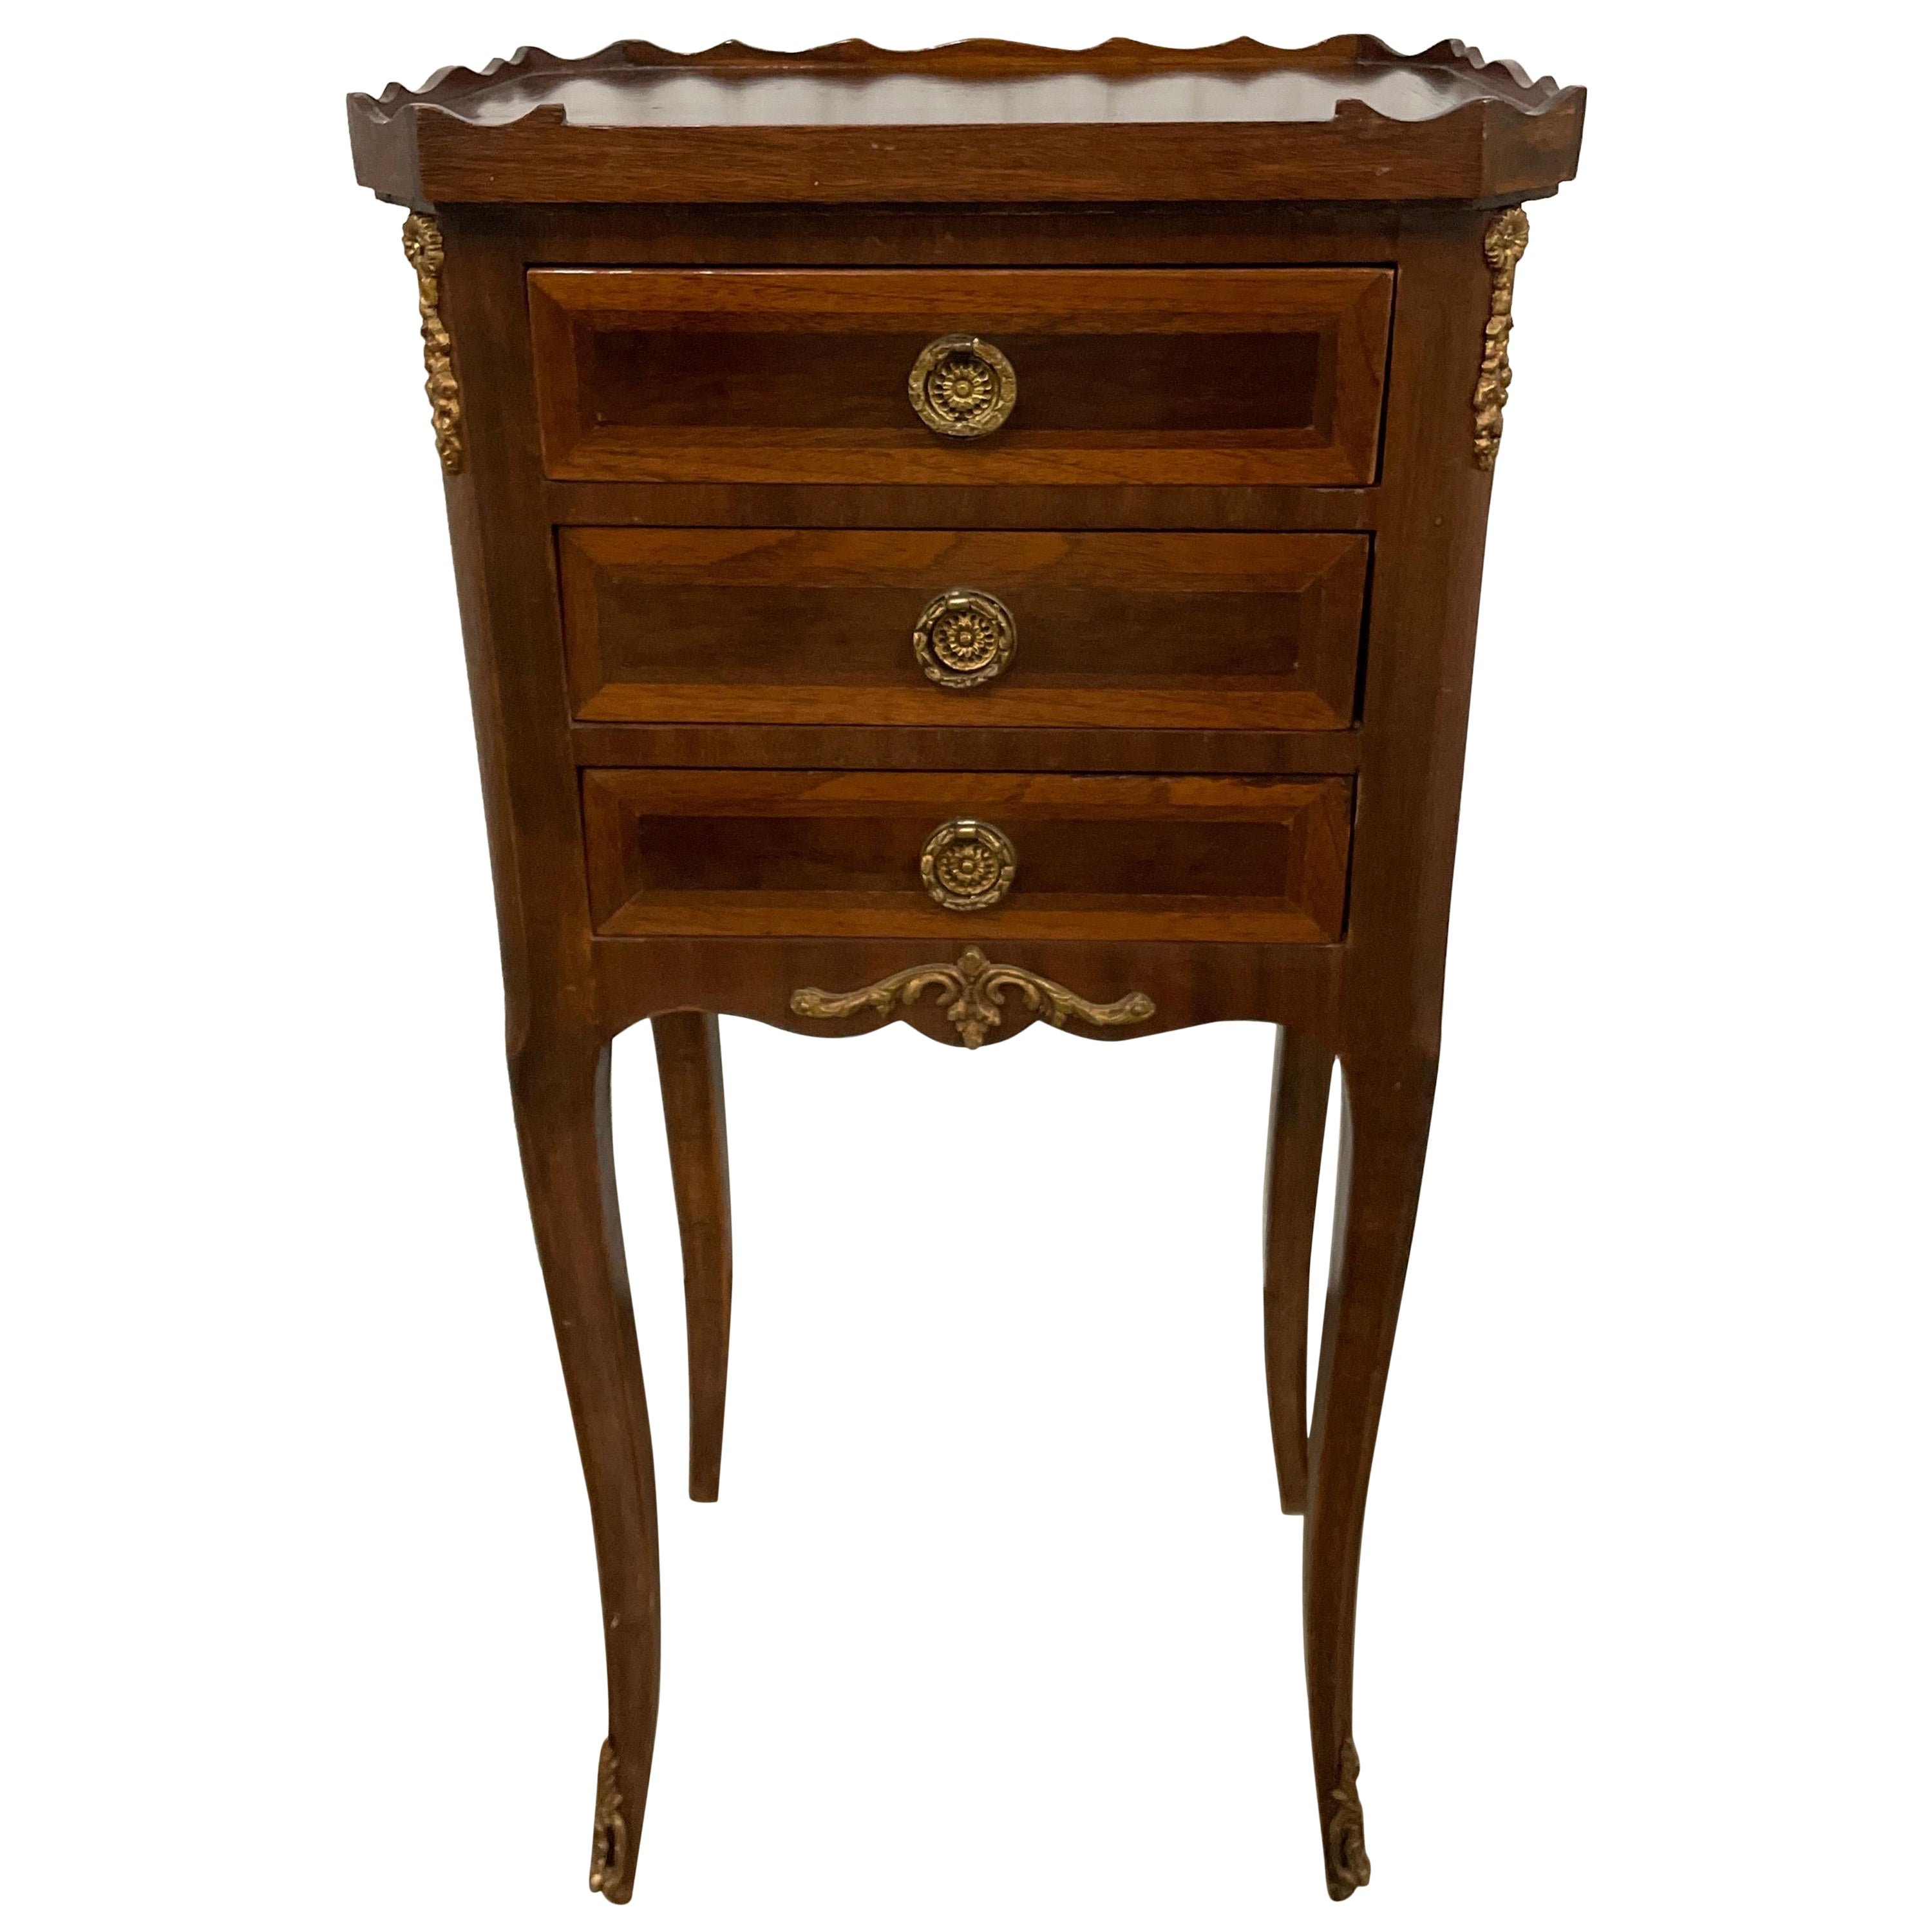 Petite commode/table d'appoint française de style Louis XV à trois tiroirs